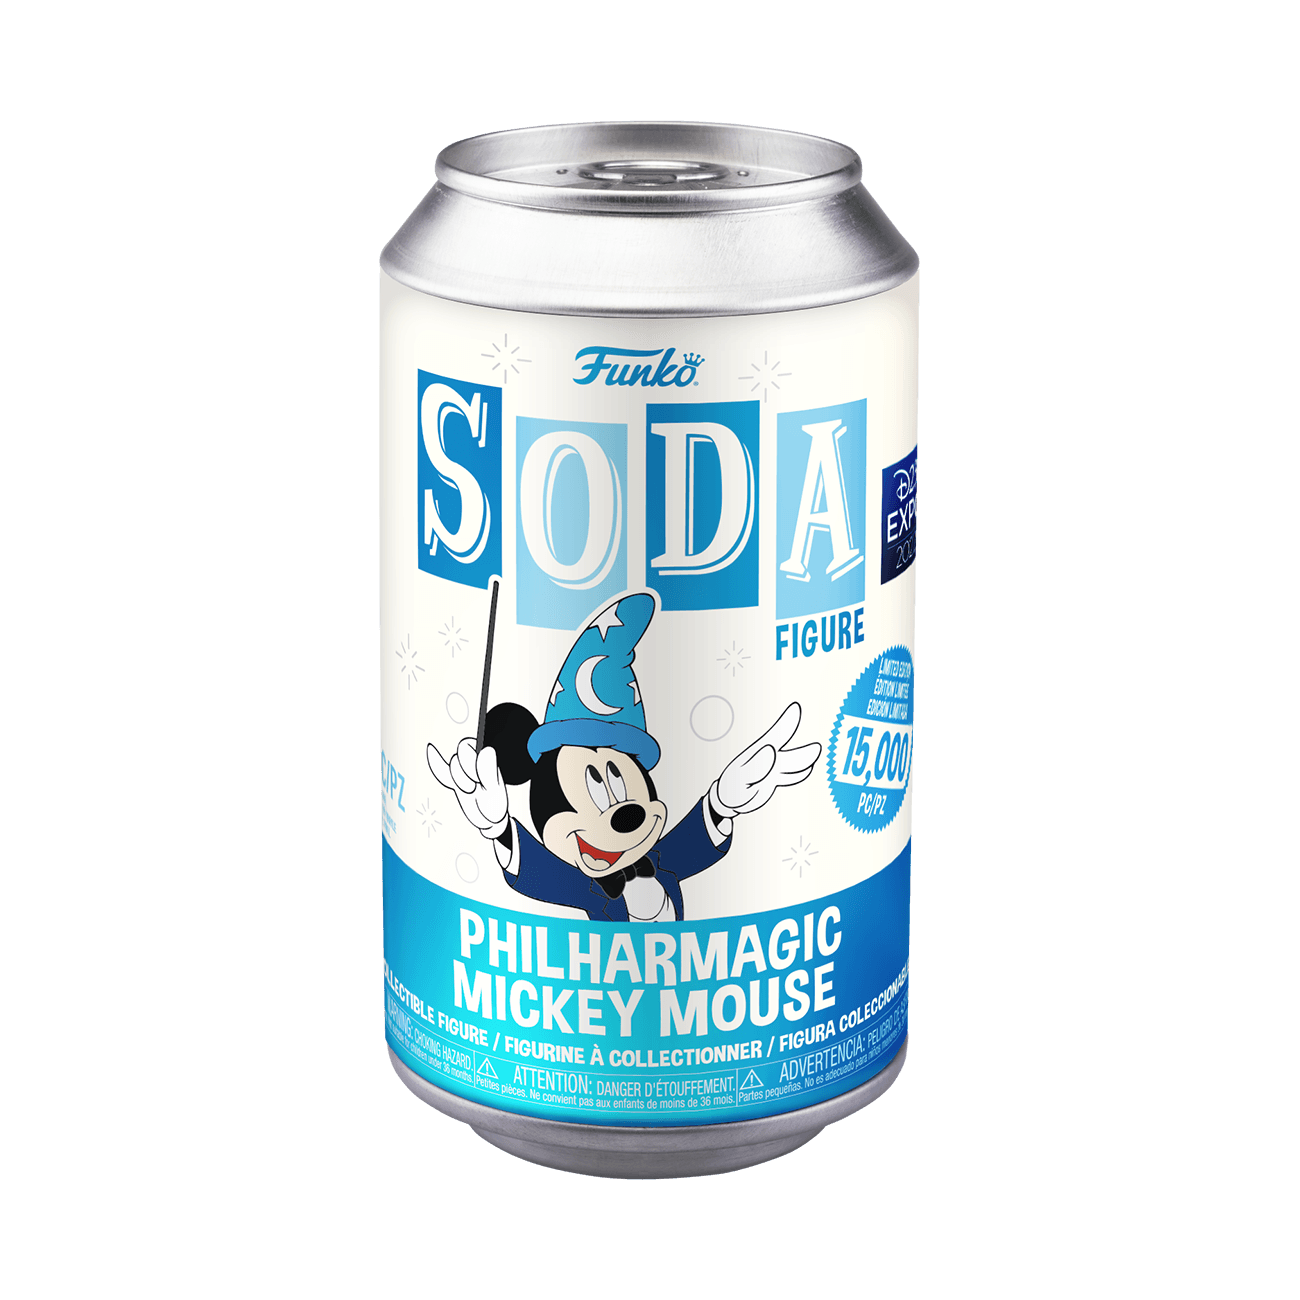 Funko Soda Philharmagic Mickey Mouse - Disney - BumbleToys - 18+, Action Figures, Boys, Disney, Funko, Mickey Mouse, Pre-Order